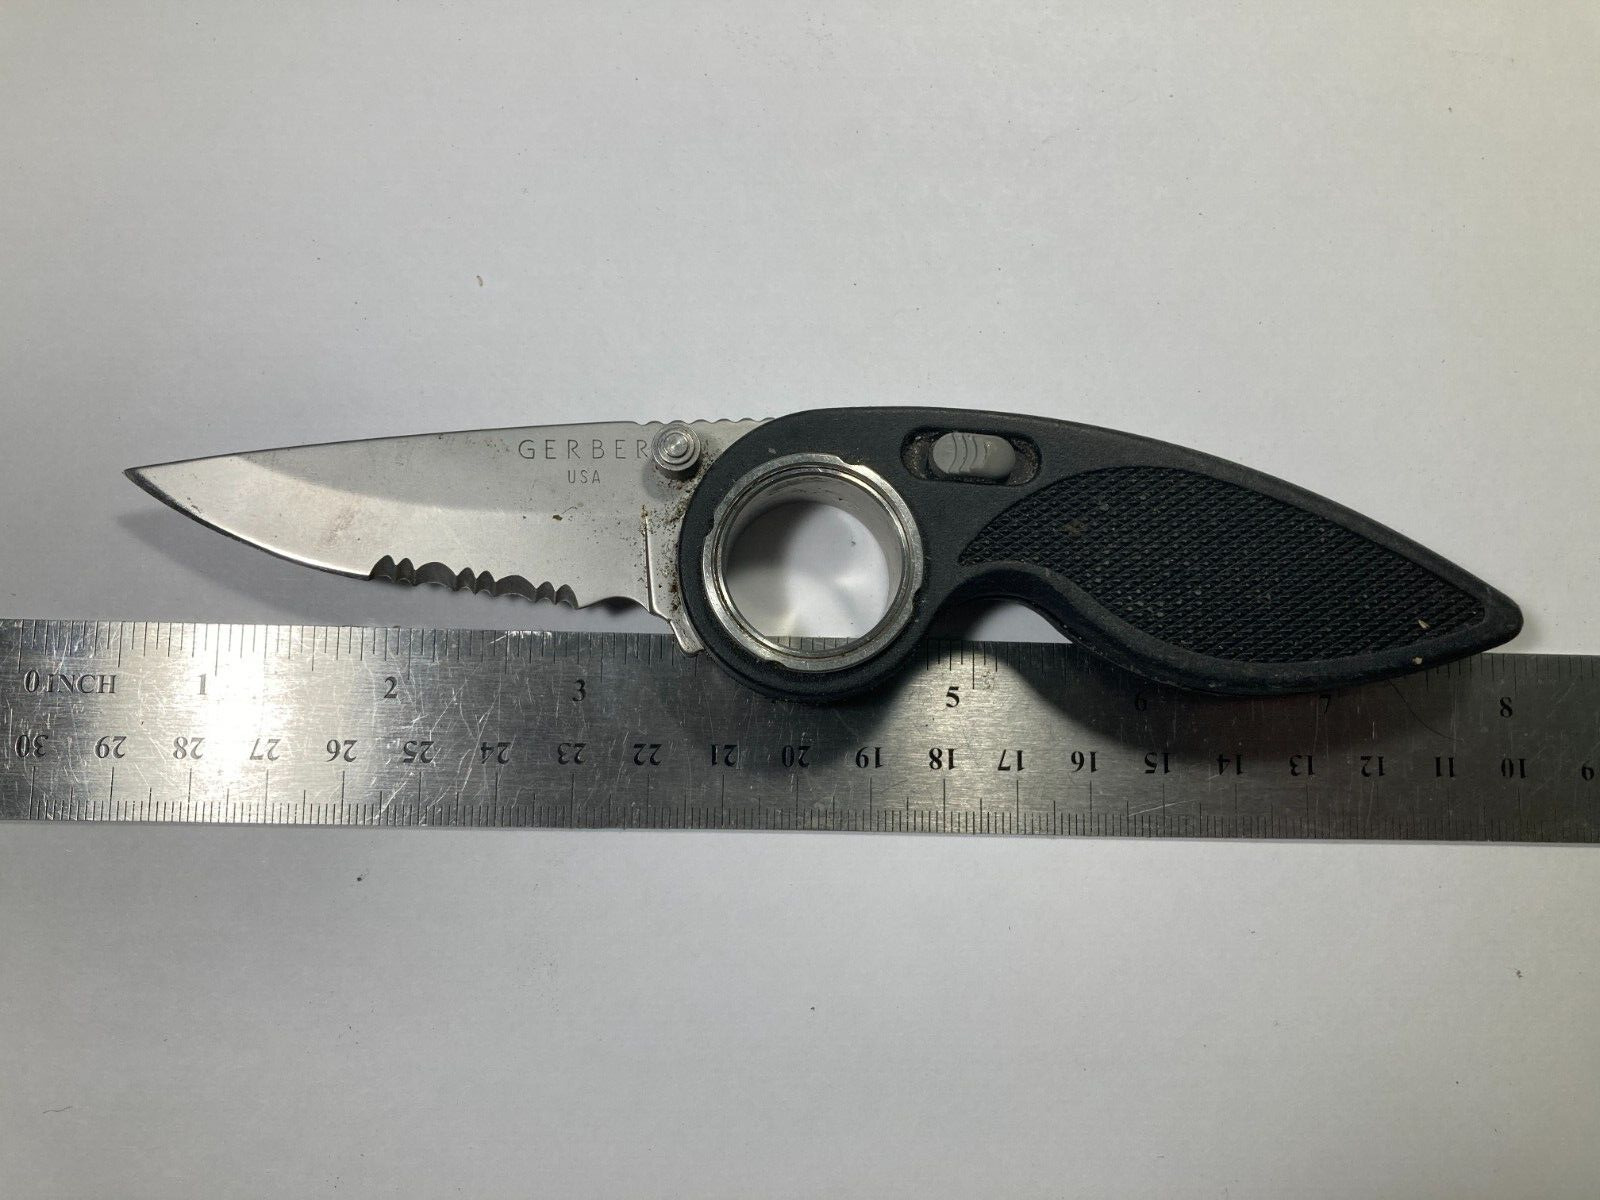 GERBER Knife Made In USA Portland OR. Chameleon Finger Hole Locking Black Handle